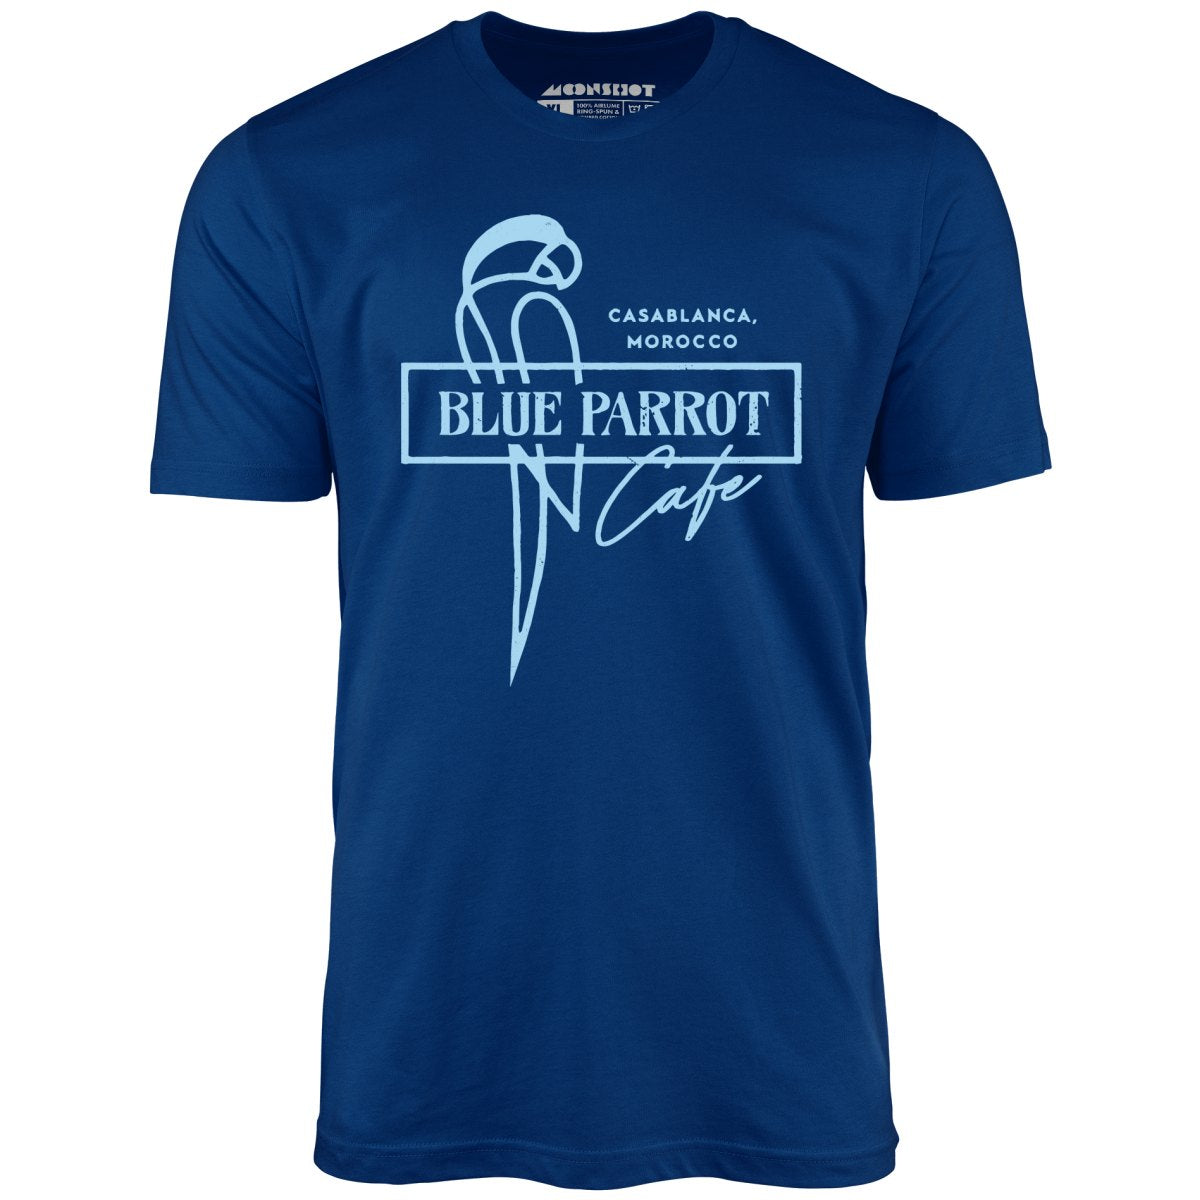 Casablanca - Blue Parrot Cafe - Unisex T-Shirt